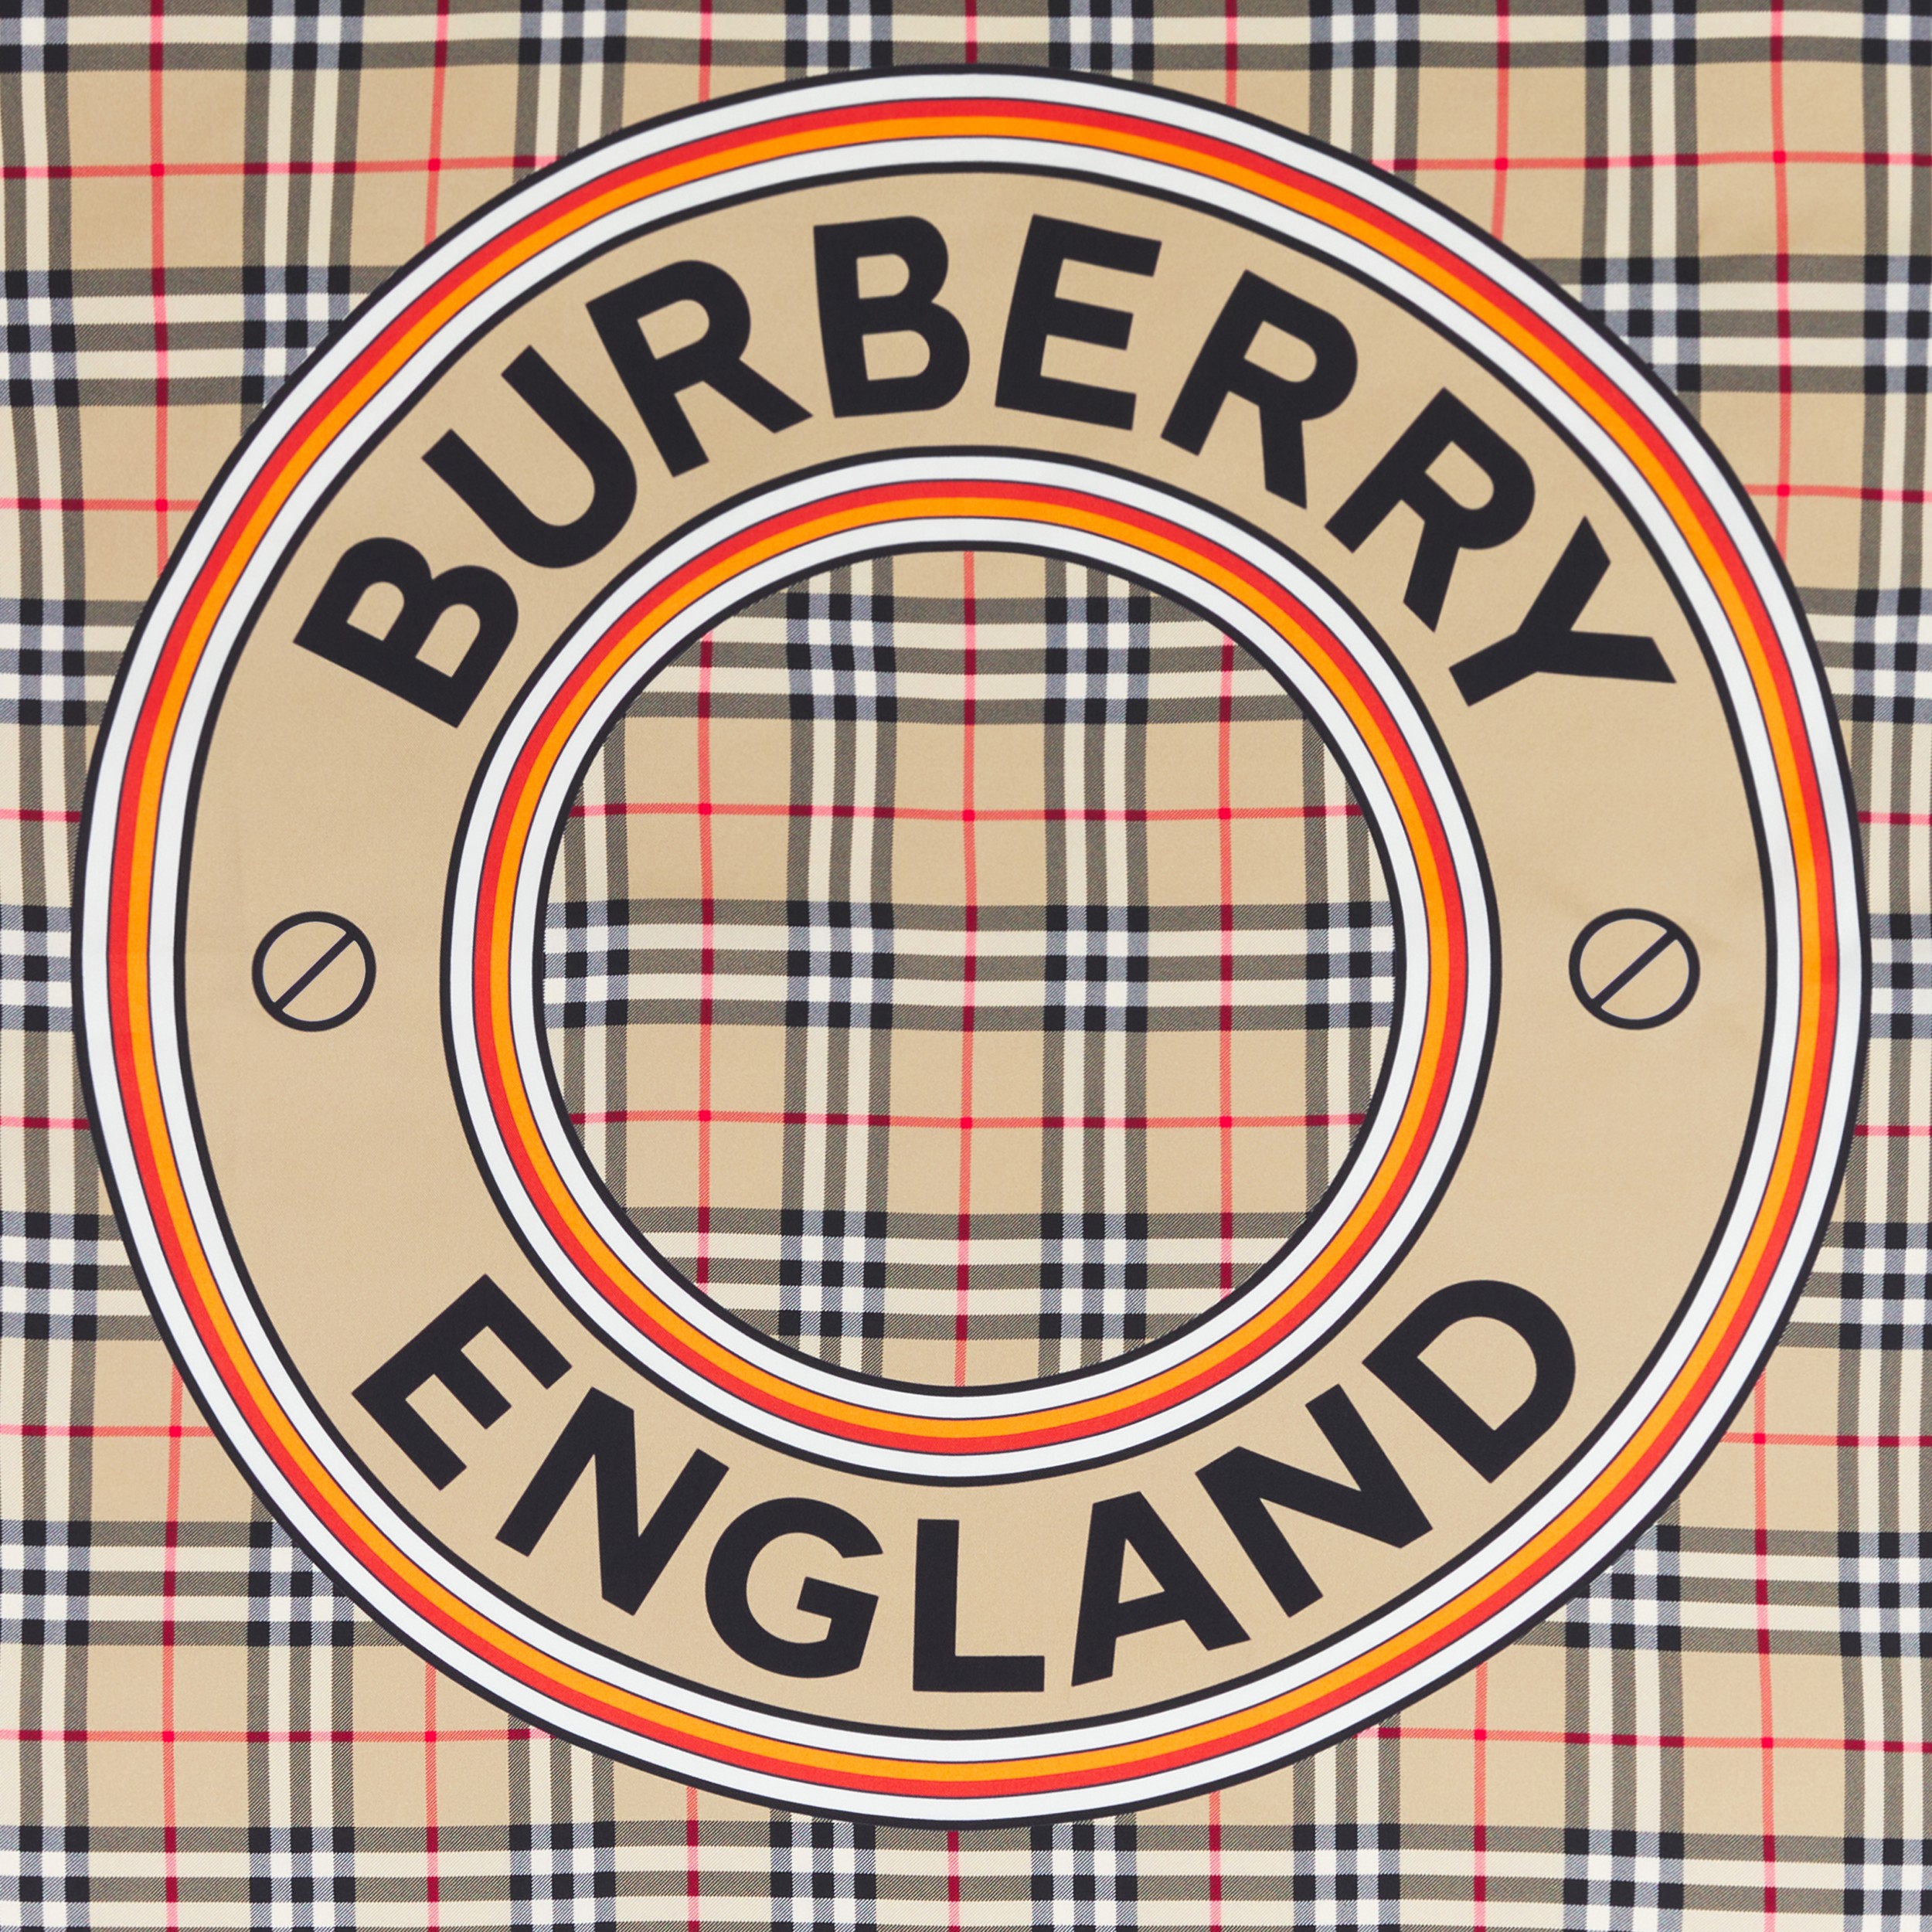 Pañuelo cuadrado en seda con estampado de montaje (Beige Vintage) | Burberry® oficial - 2